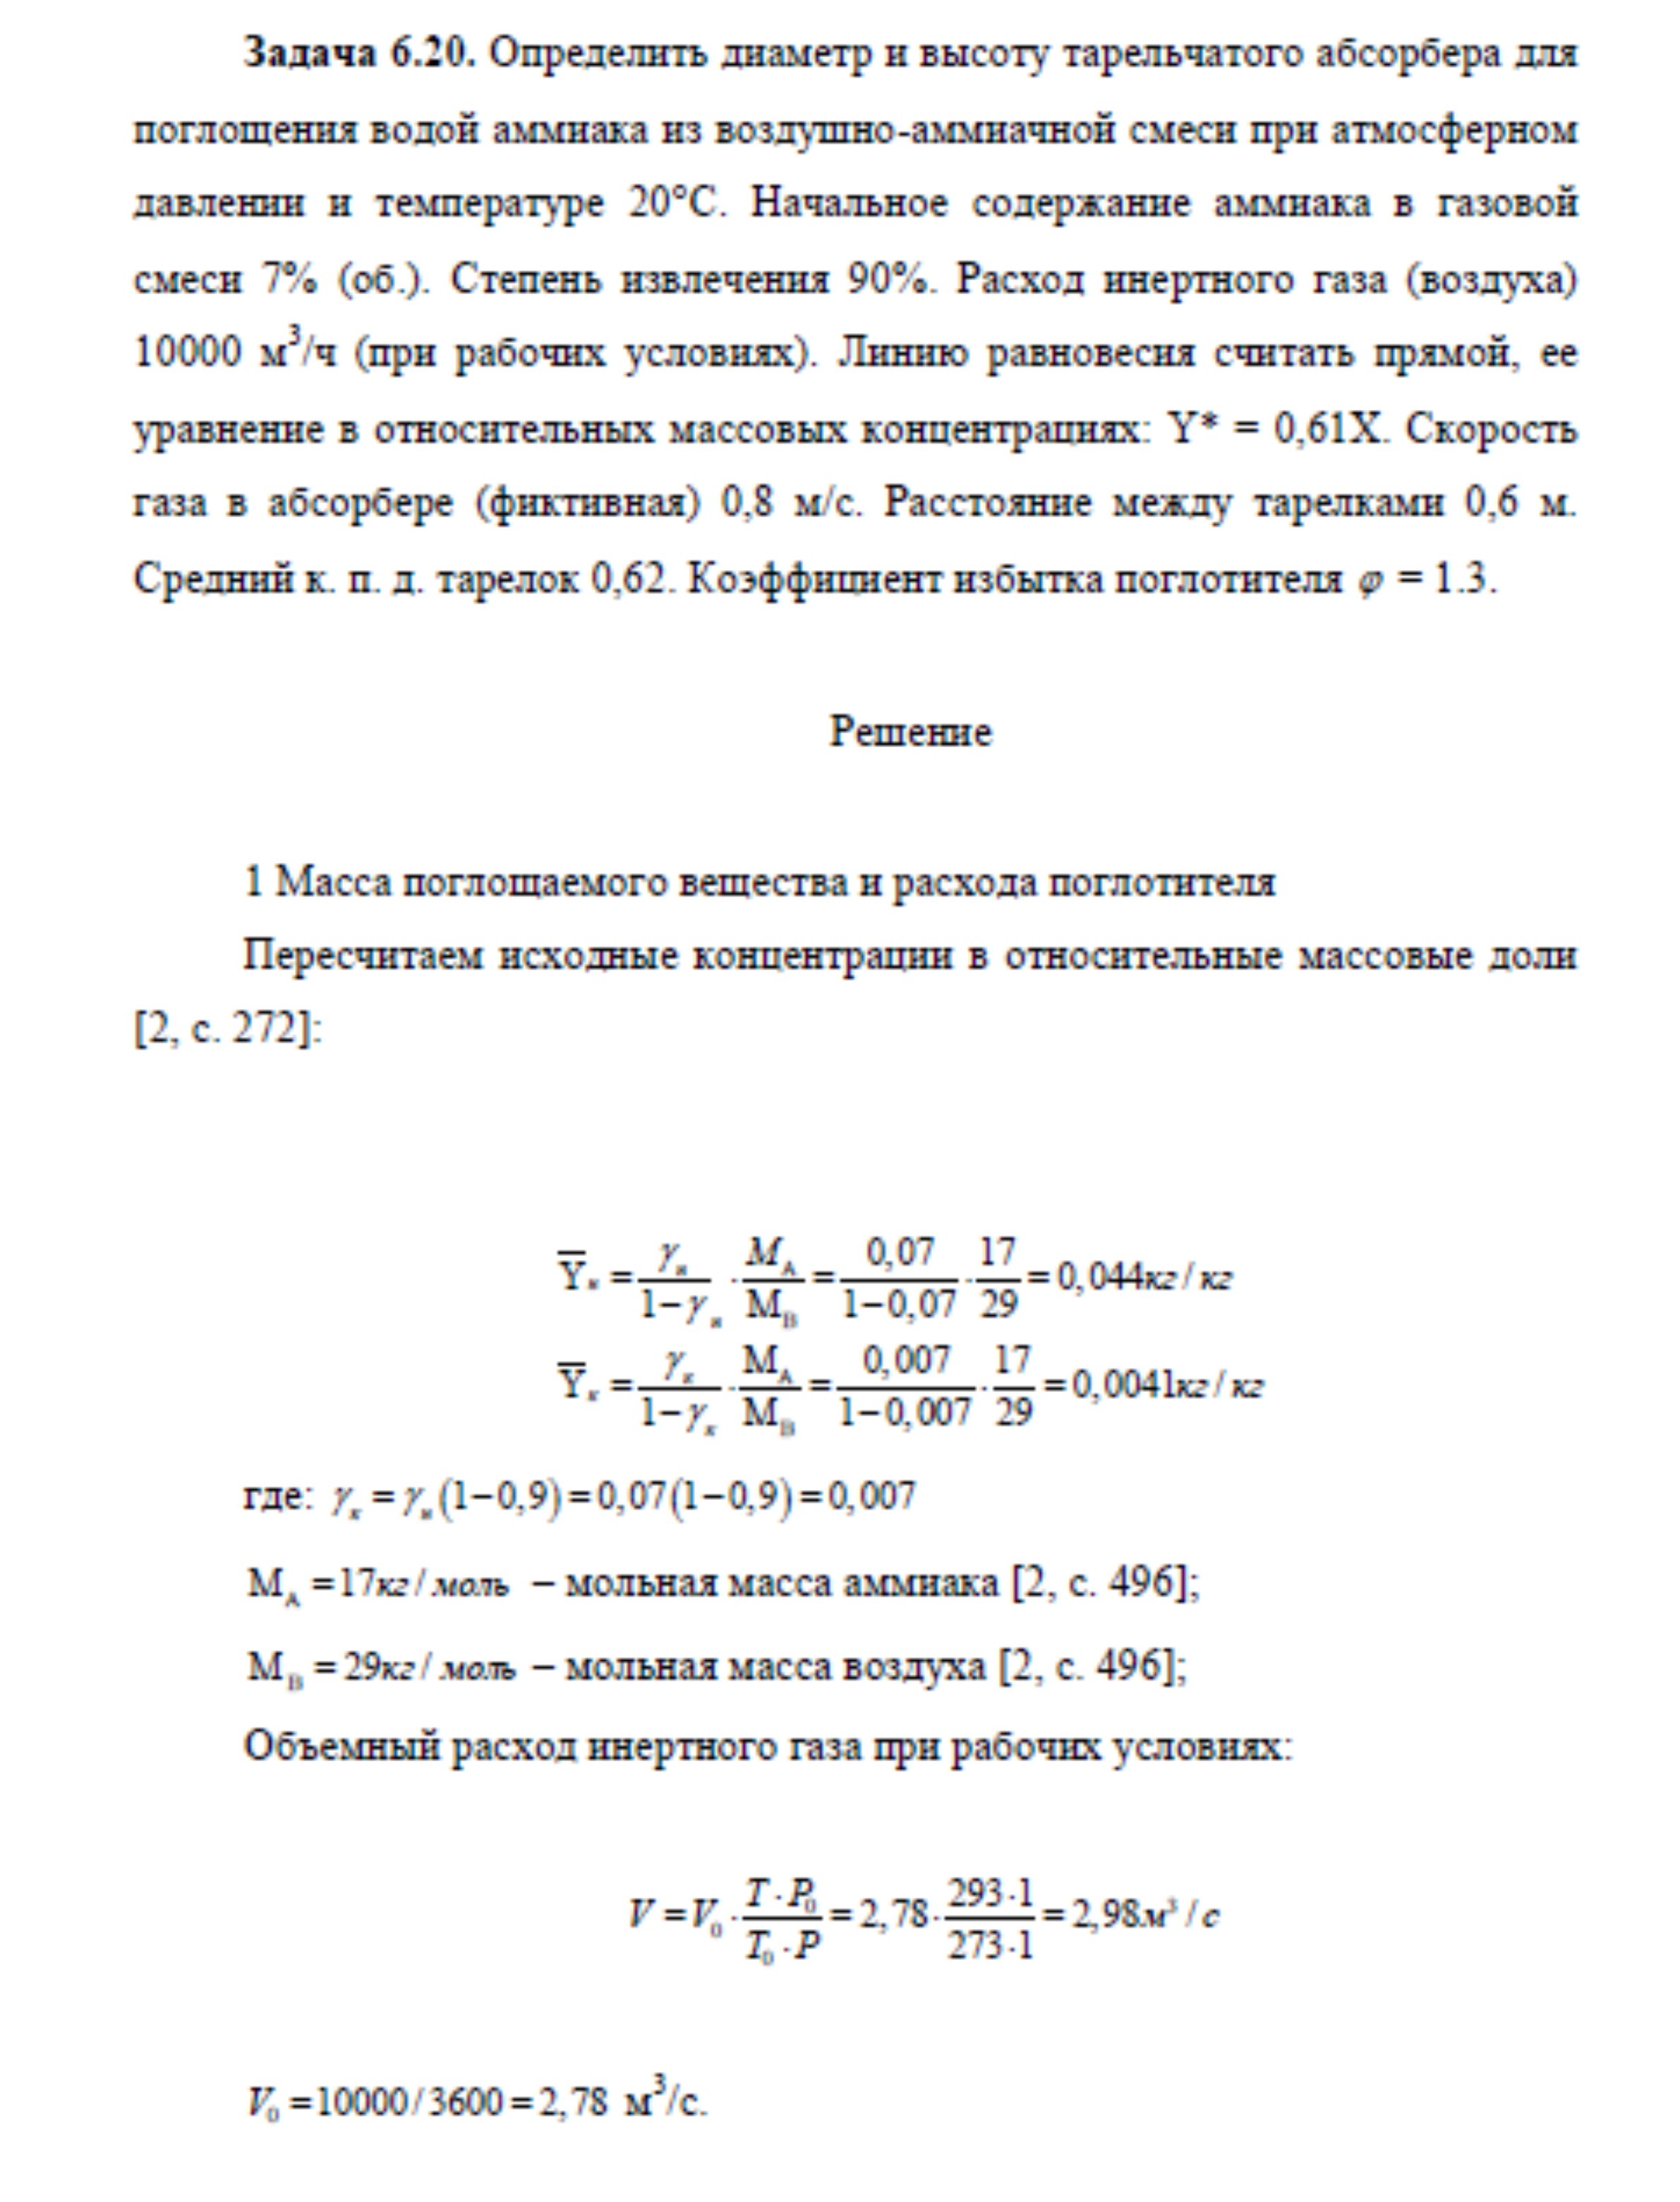 Решение задачи 6.20 по ПАХТ из задачника Павлова Романкова Носкова